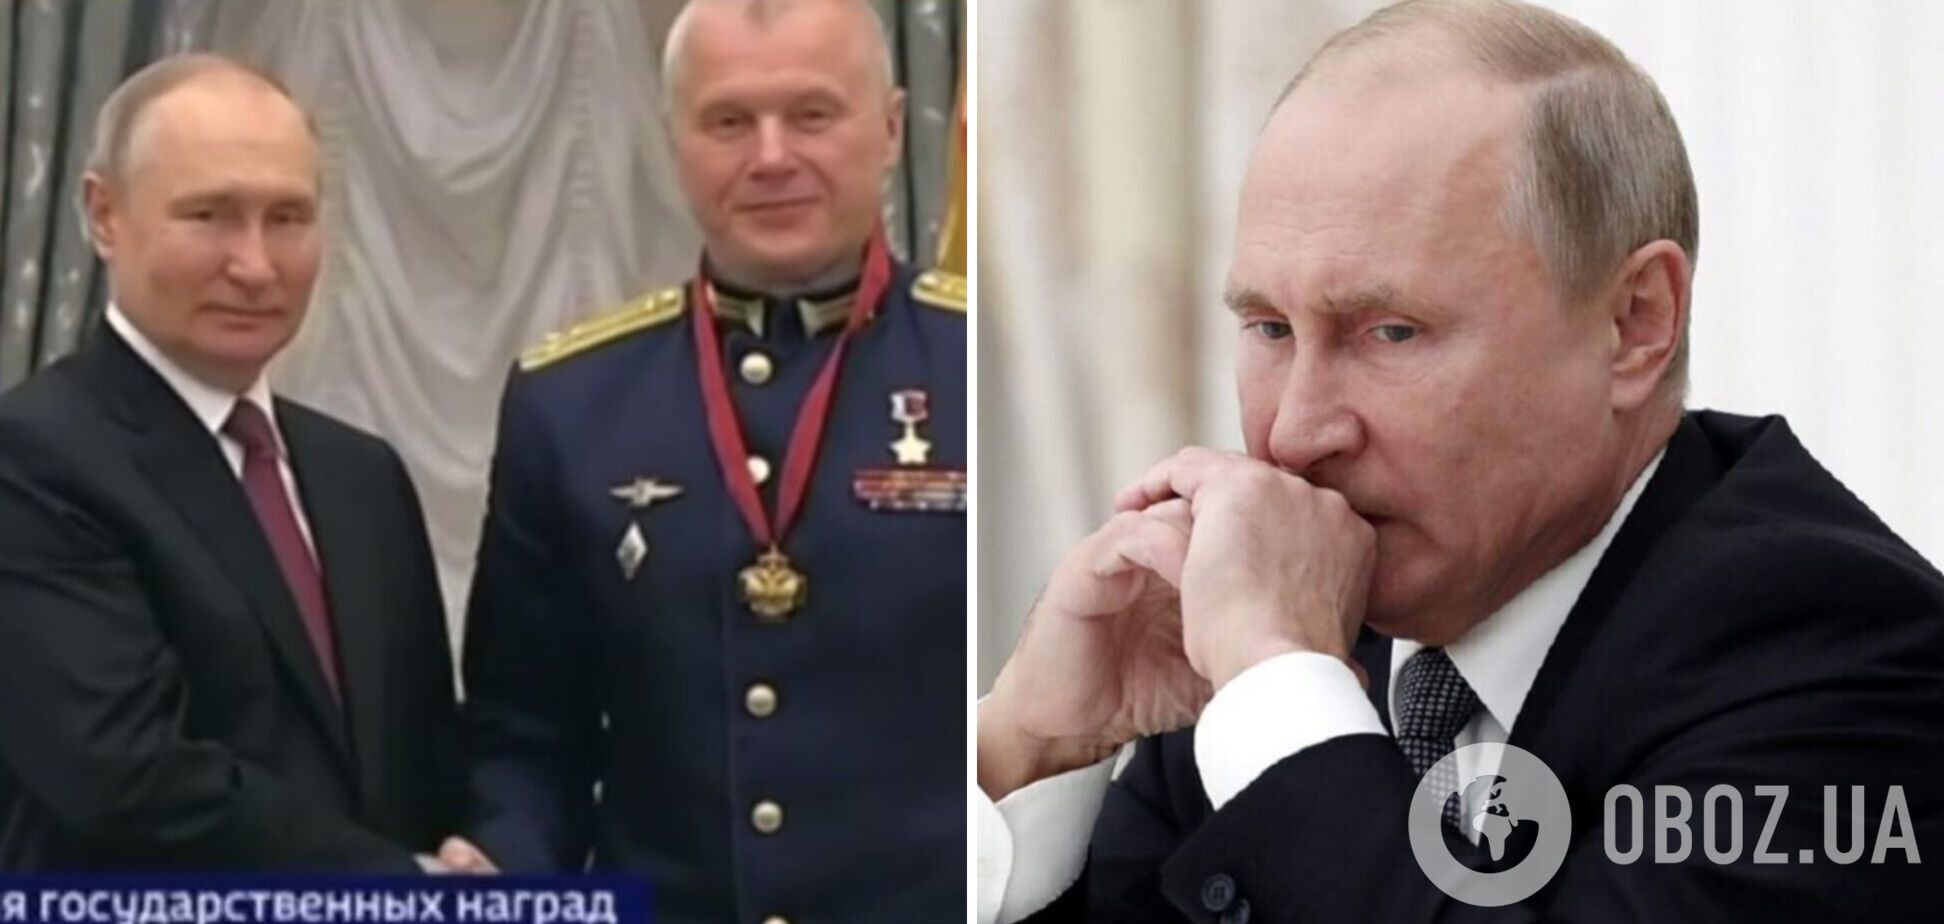 'Кто-то всерьез думает, что он может использовать ядерное оружие?' Космонавт выдал страх Путина, в сети шквал комментариев. Видео